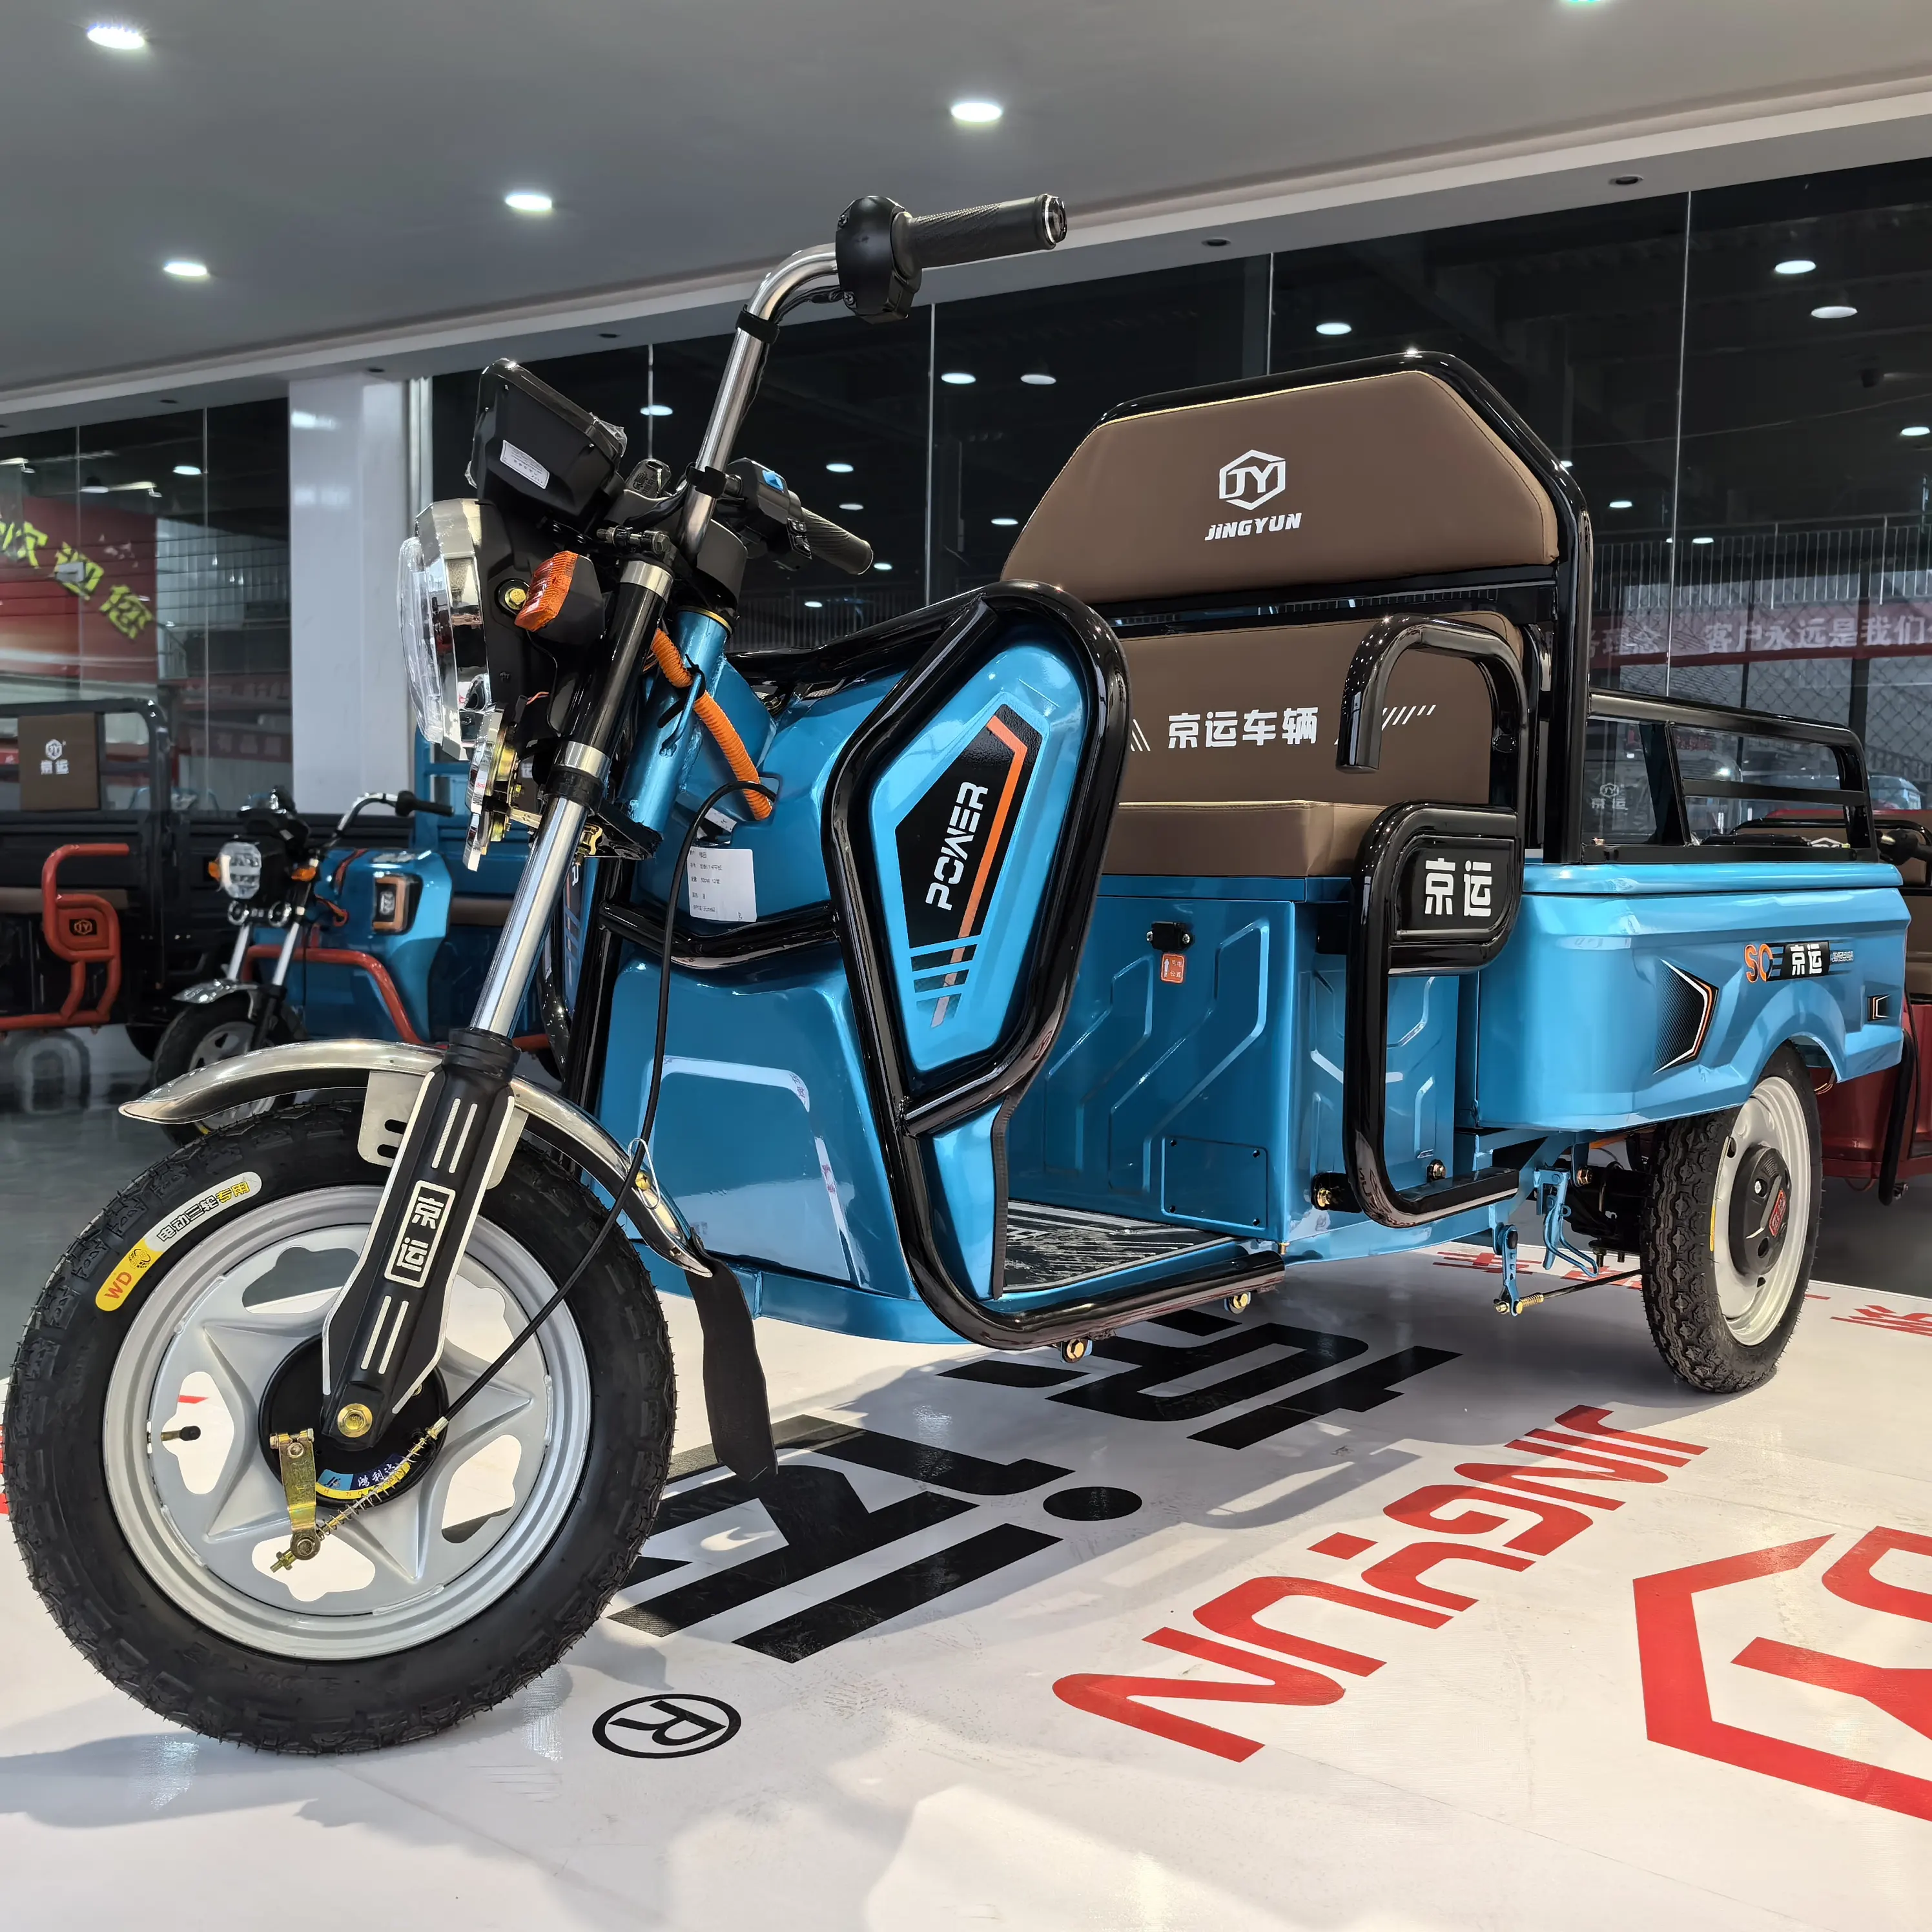 1000 W Venda Quente de boa qualidade Smart Trike Peças de reposição Triciclo elétrico com frete barato triciclo elétrico